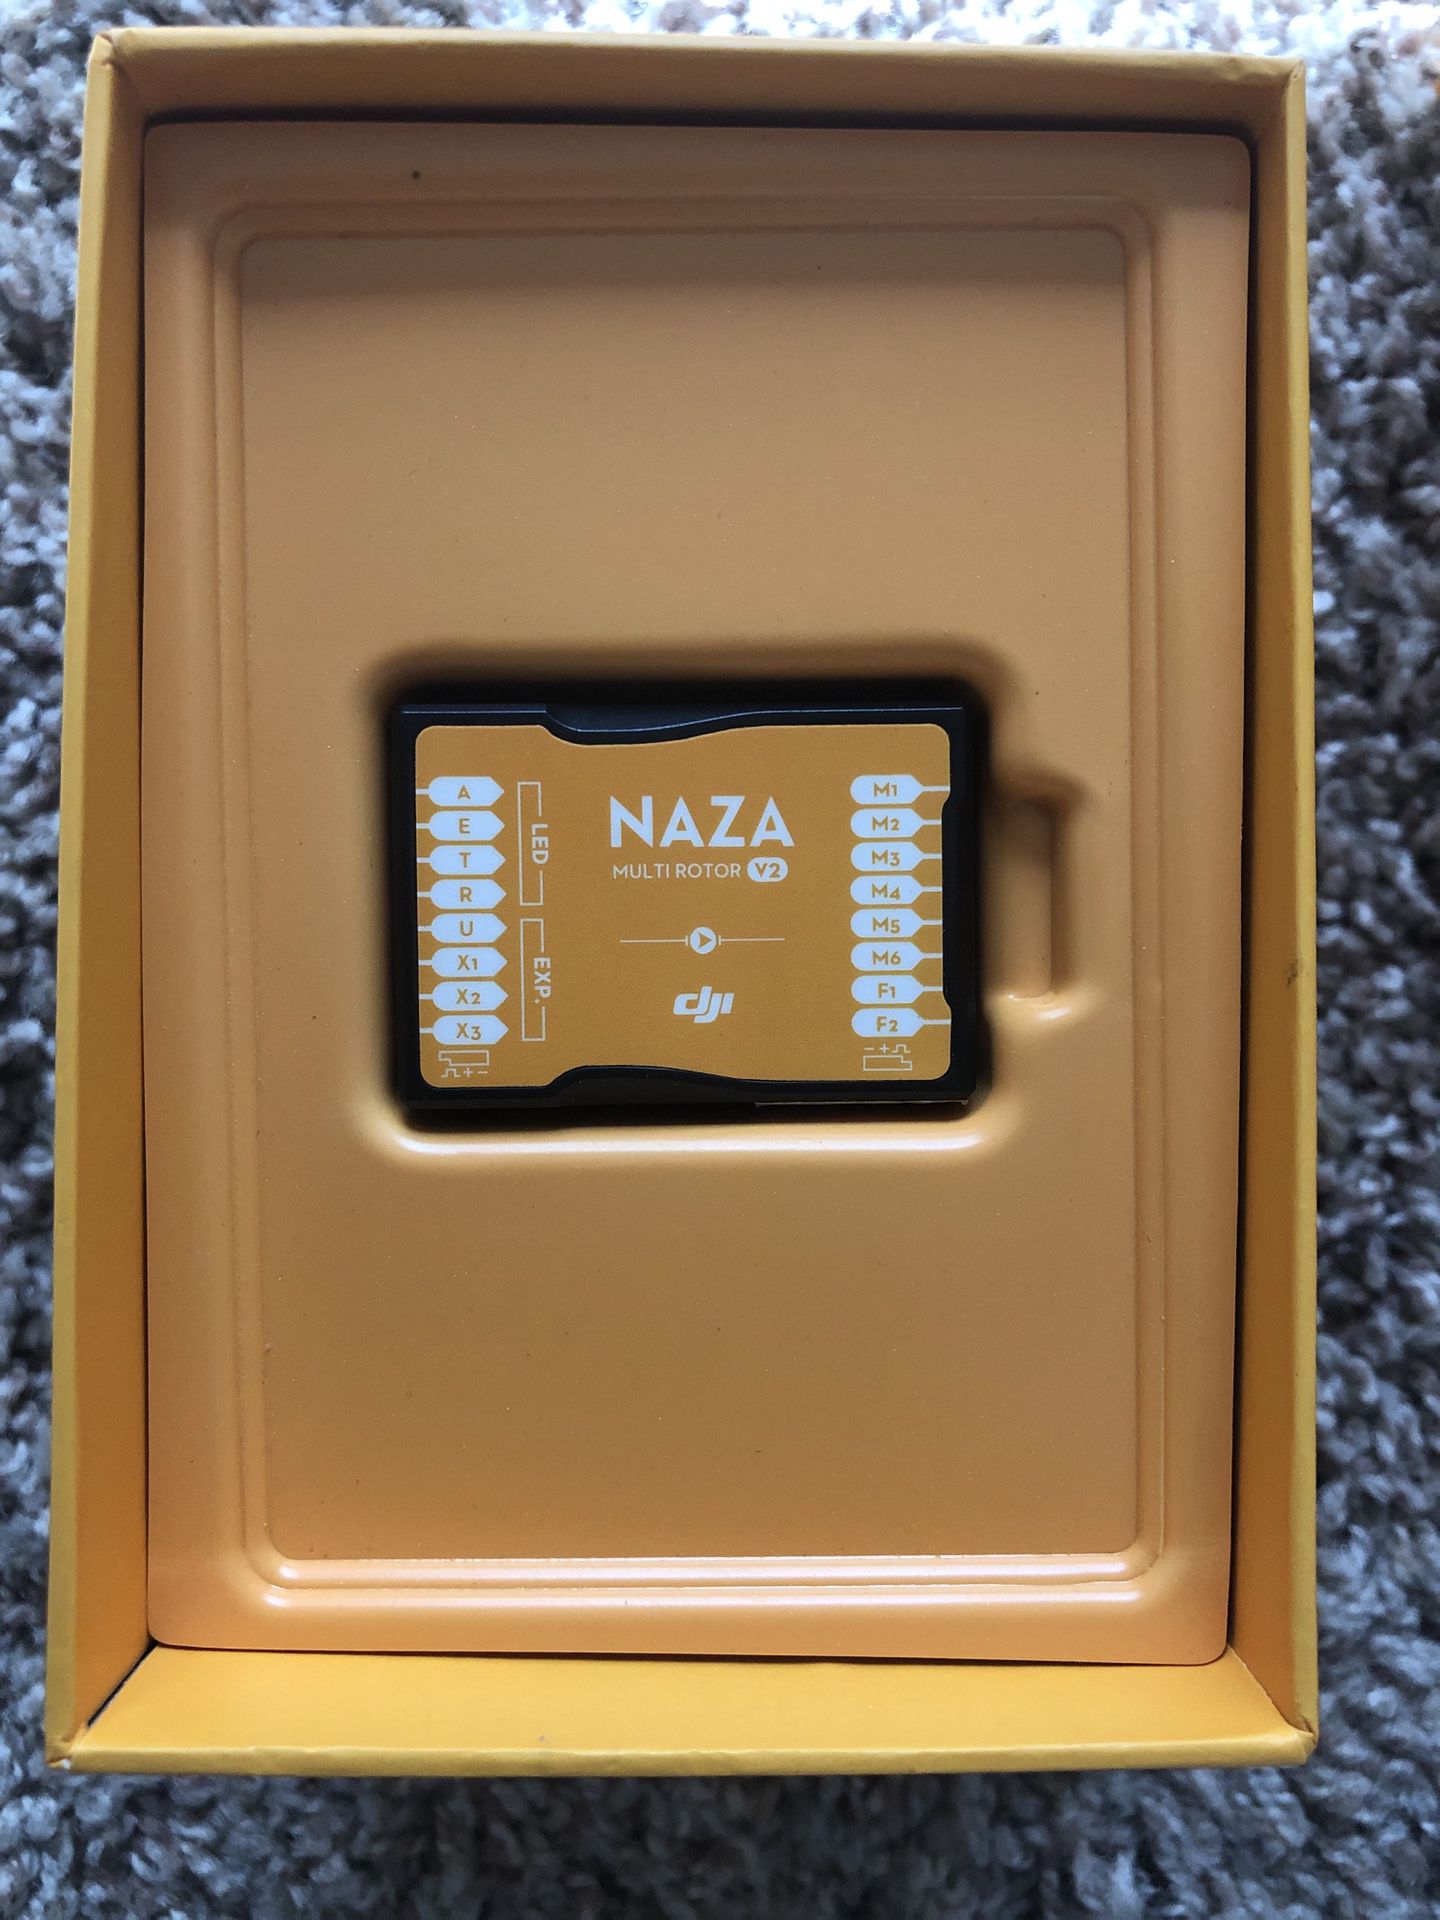 Dji Naza-M v2 drone controller